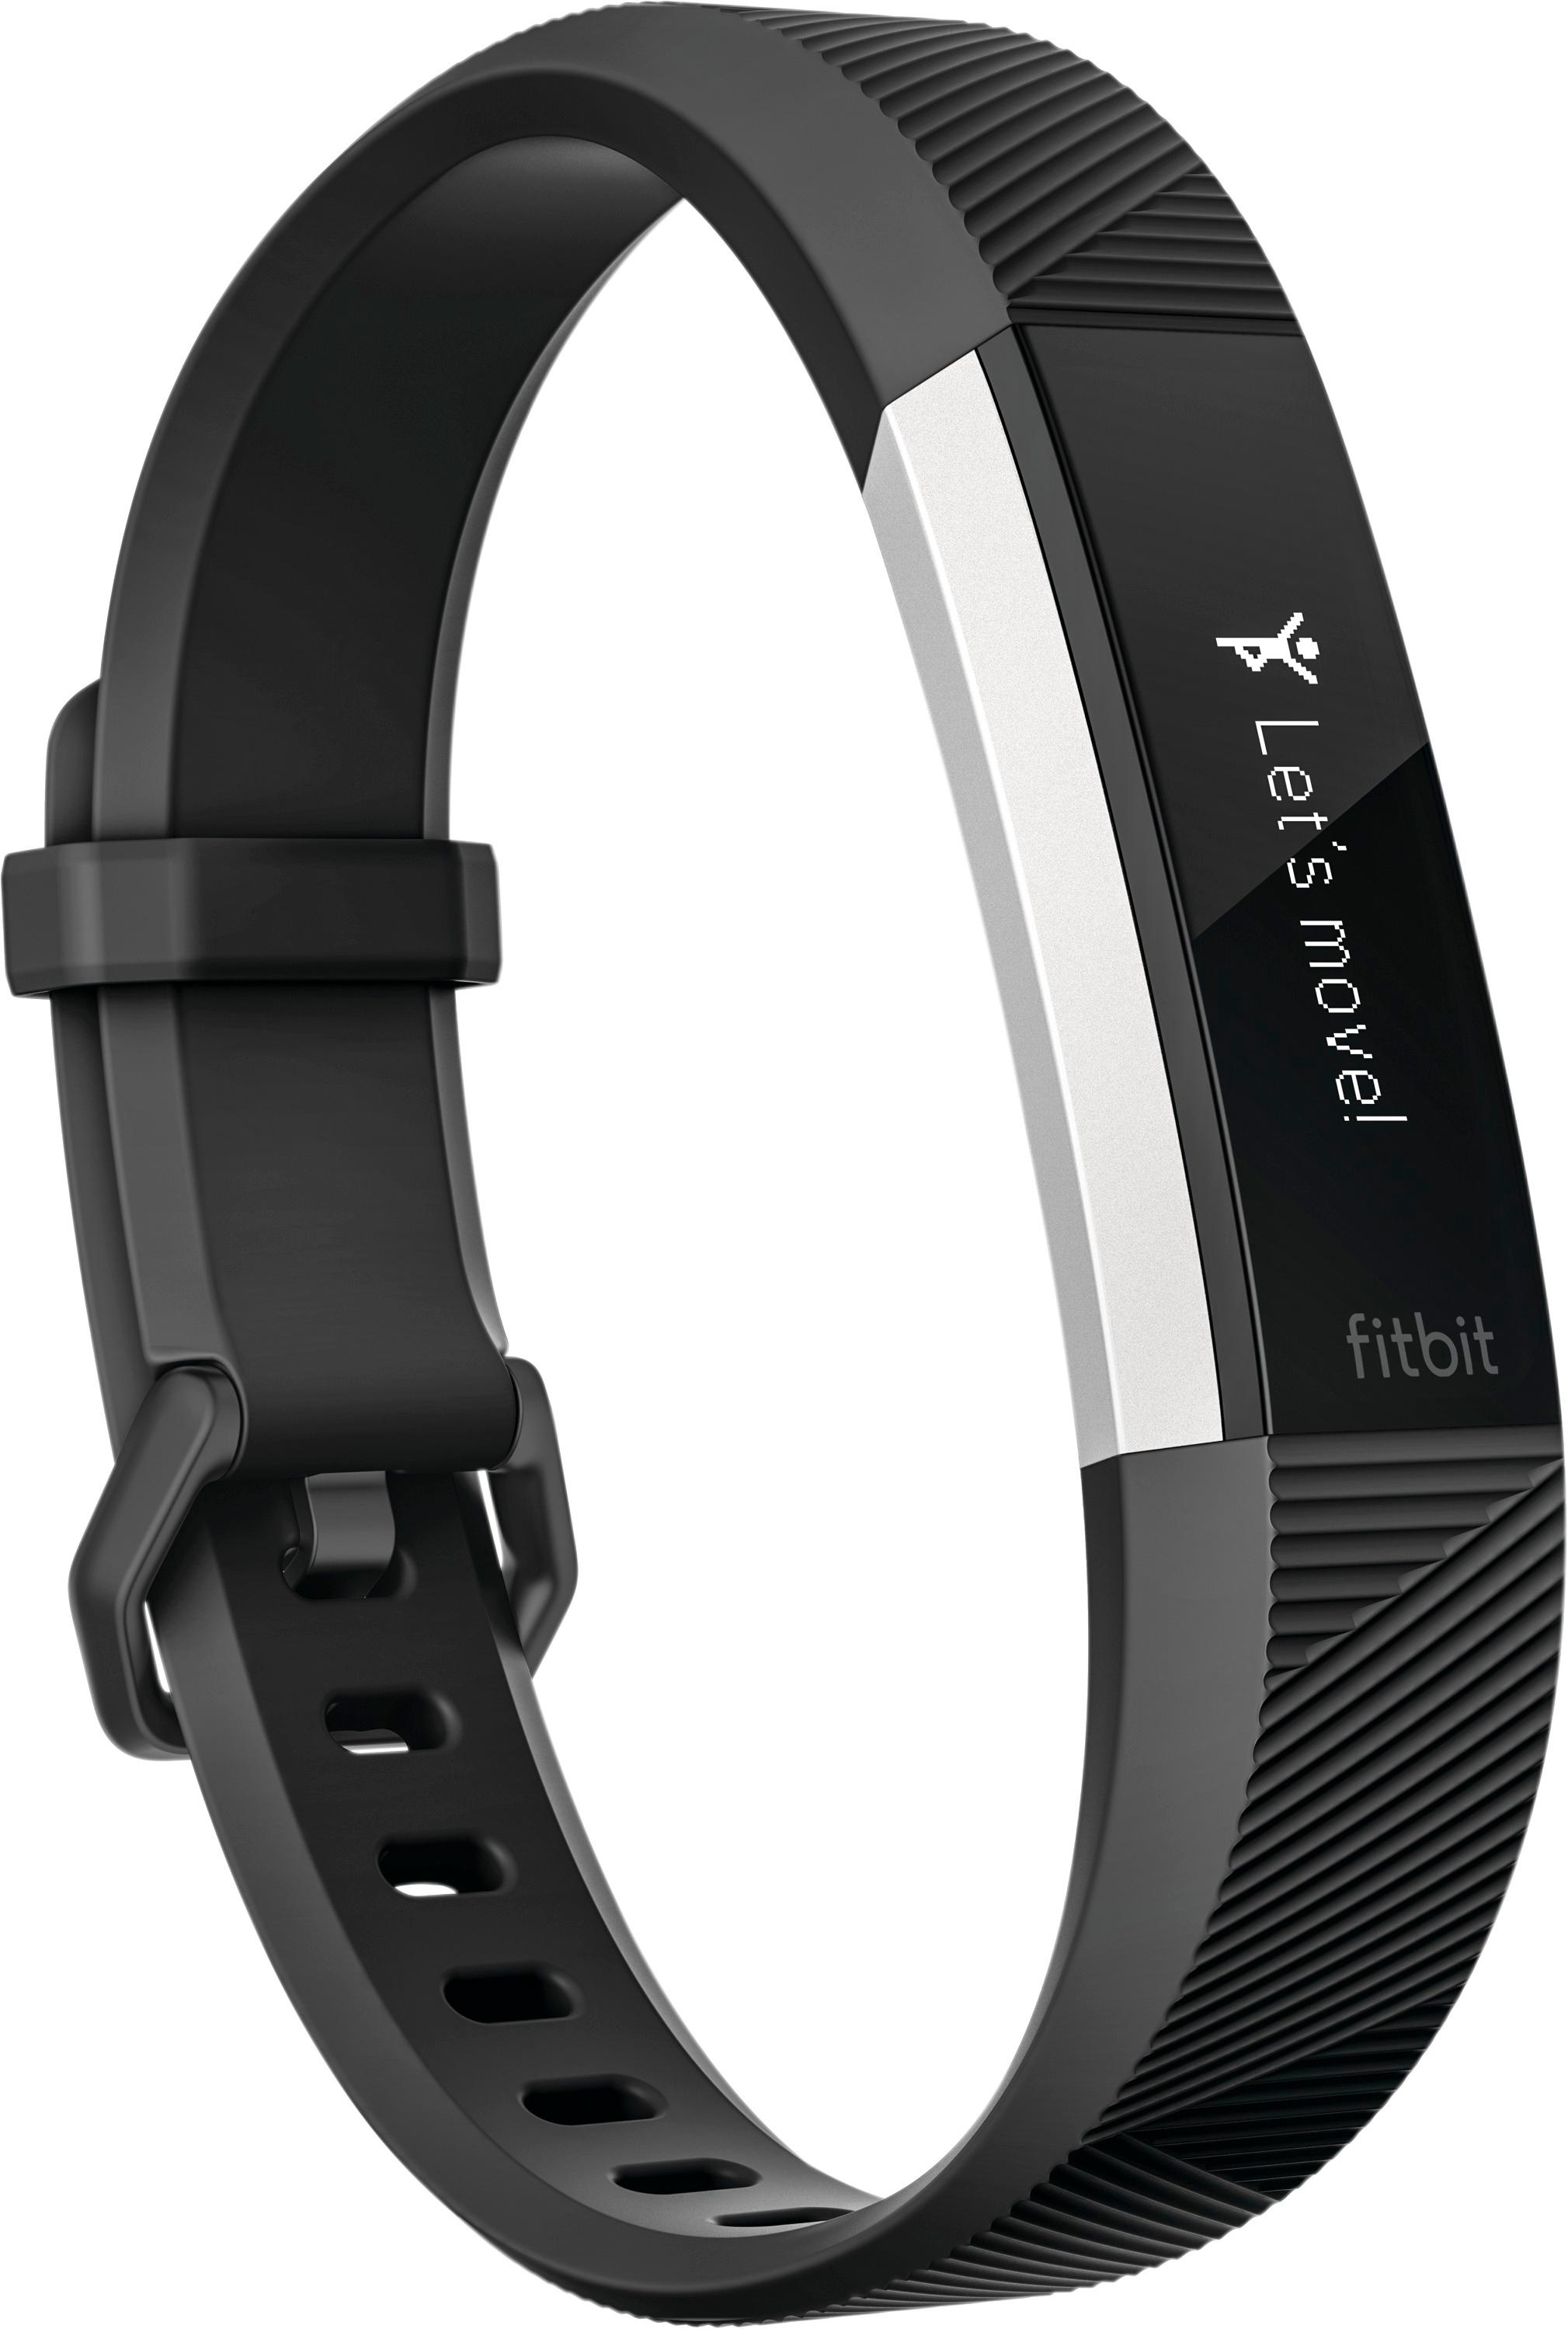 verkiezen makkelijk te gebruiken Gewoon Best Buy: Fitbit Alta HR Activity Tracker + Heart Rate (Small) Black  FB408SBKS